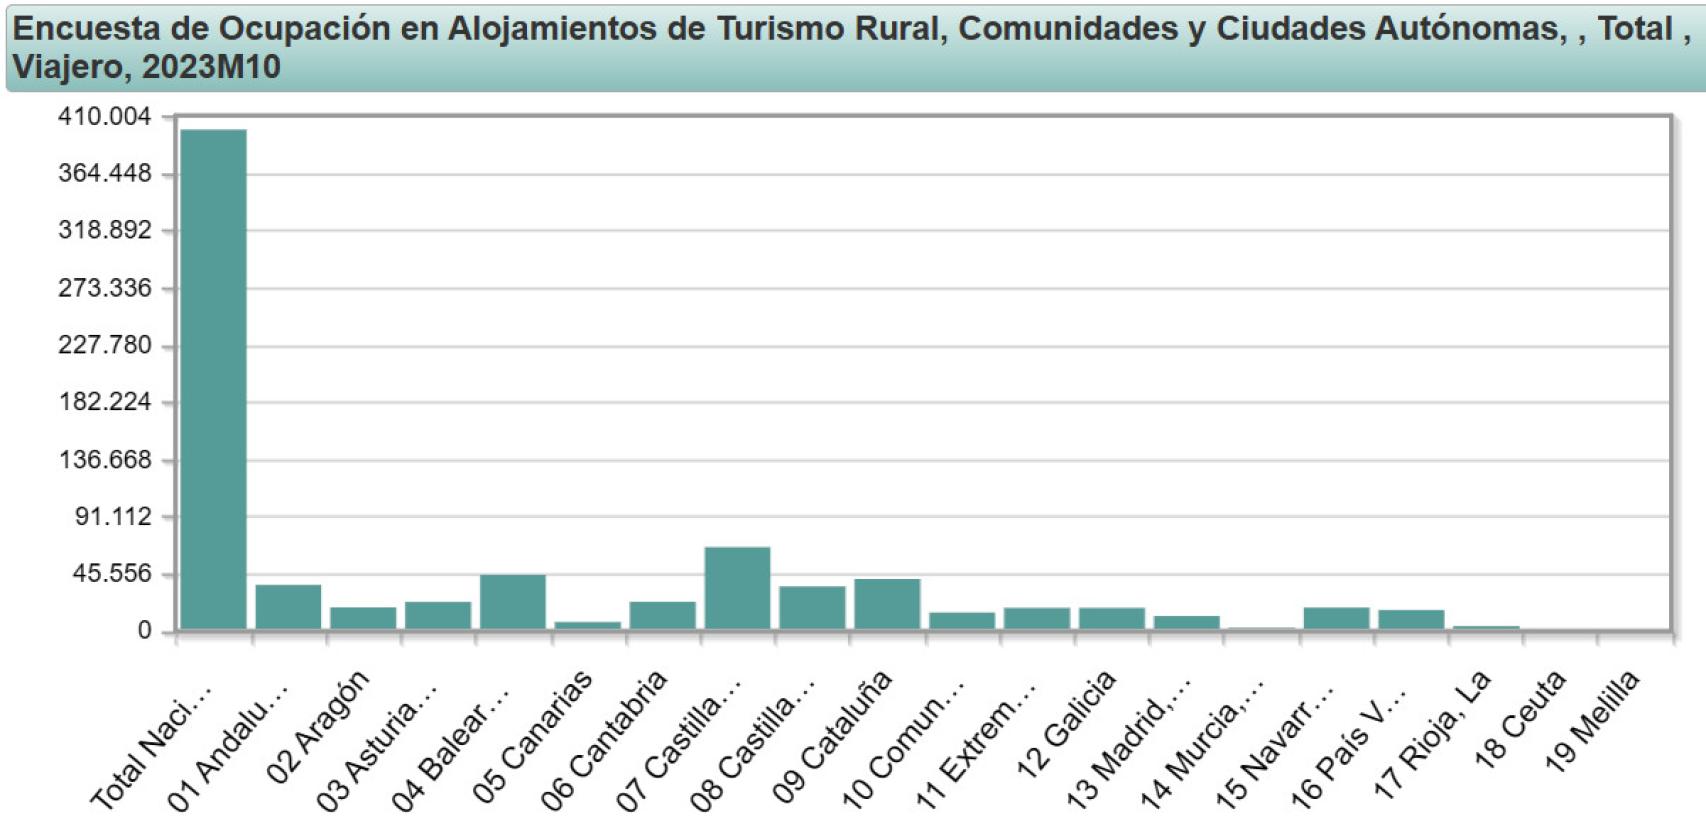 Gráfico del total de viajeros de turismo rural por comunidades autónomas en octubre de 2023